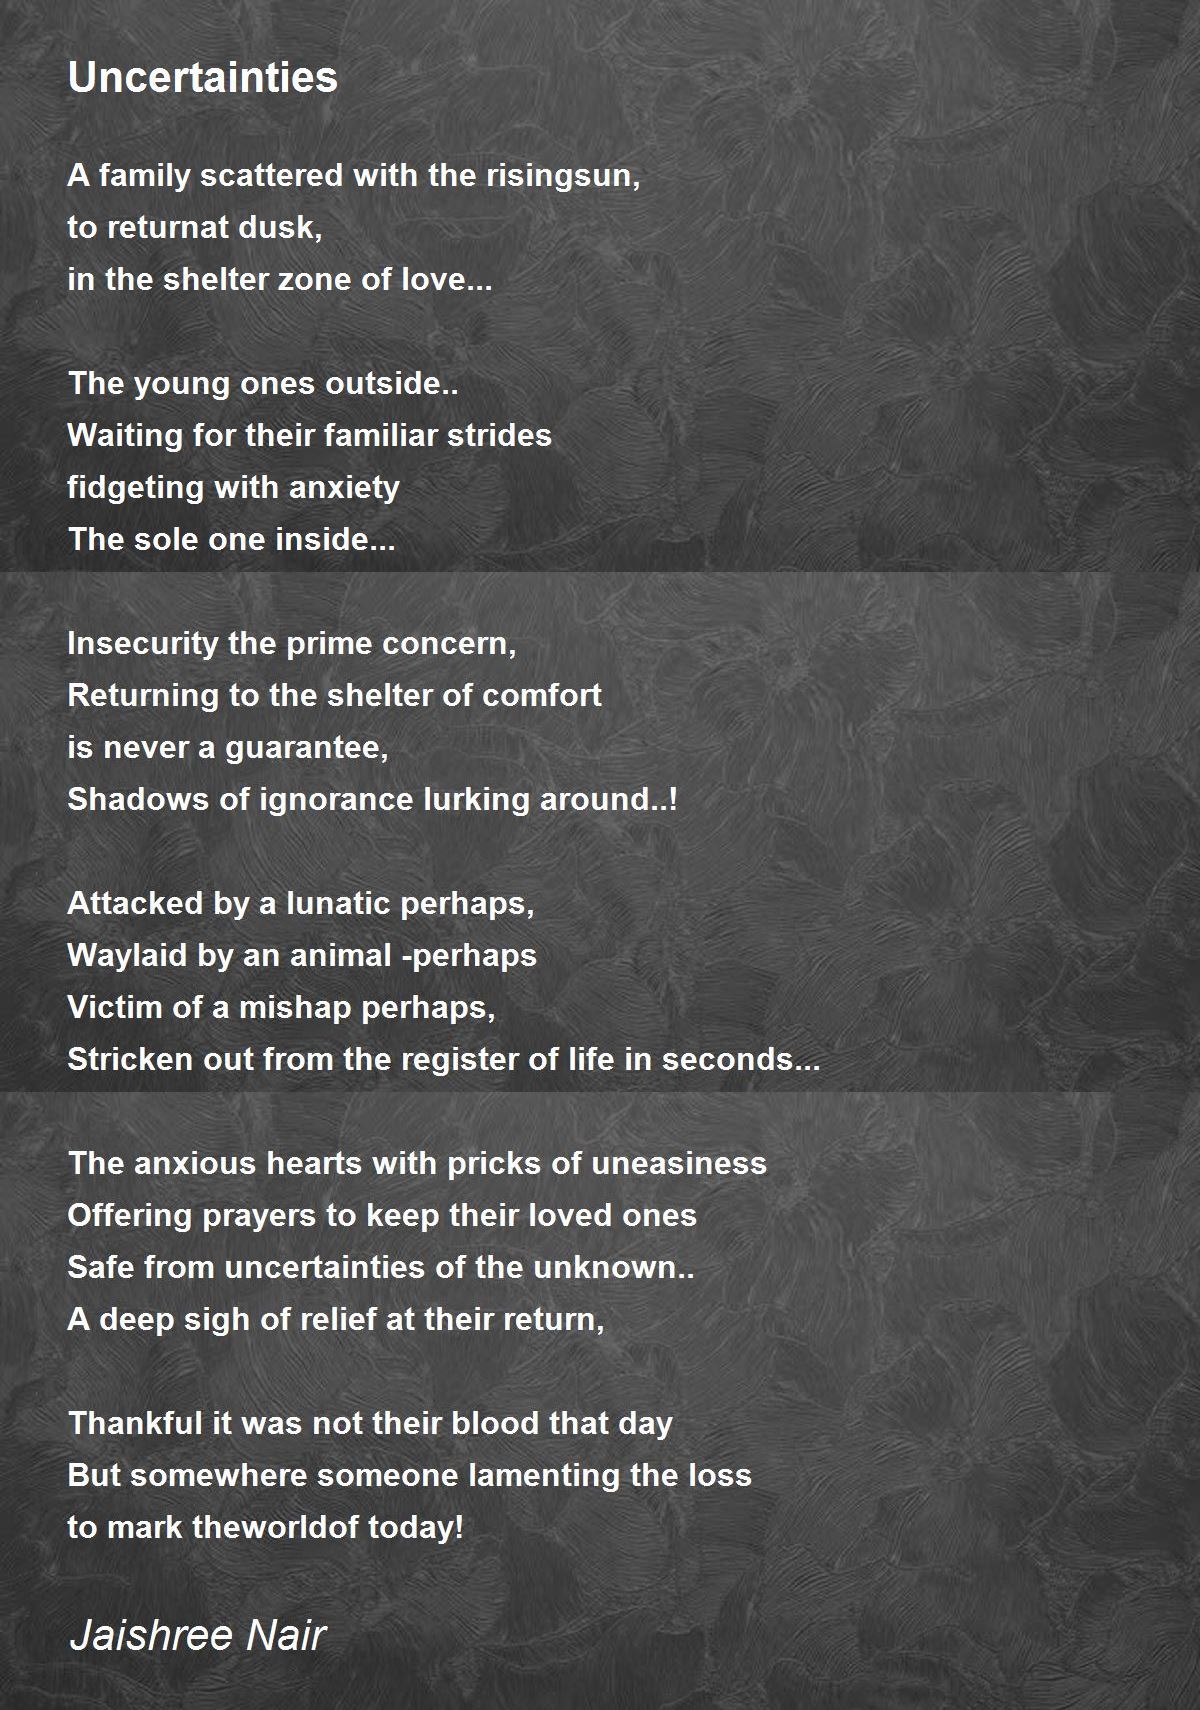 Uncertainties - Uncertainties Poem by Jaishree Nair